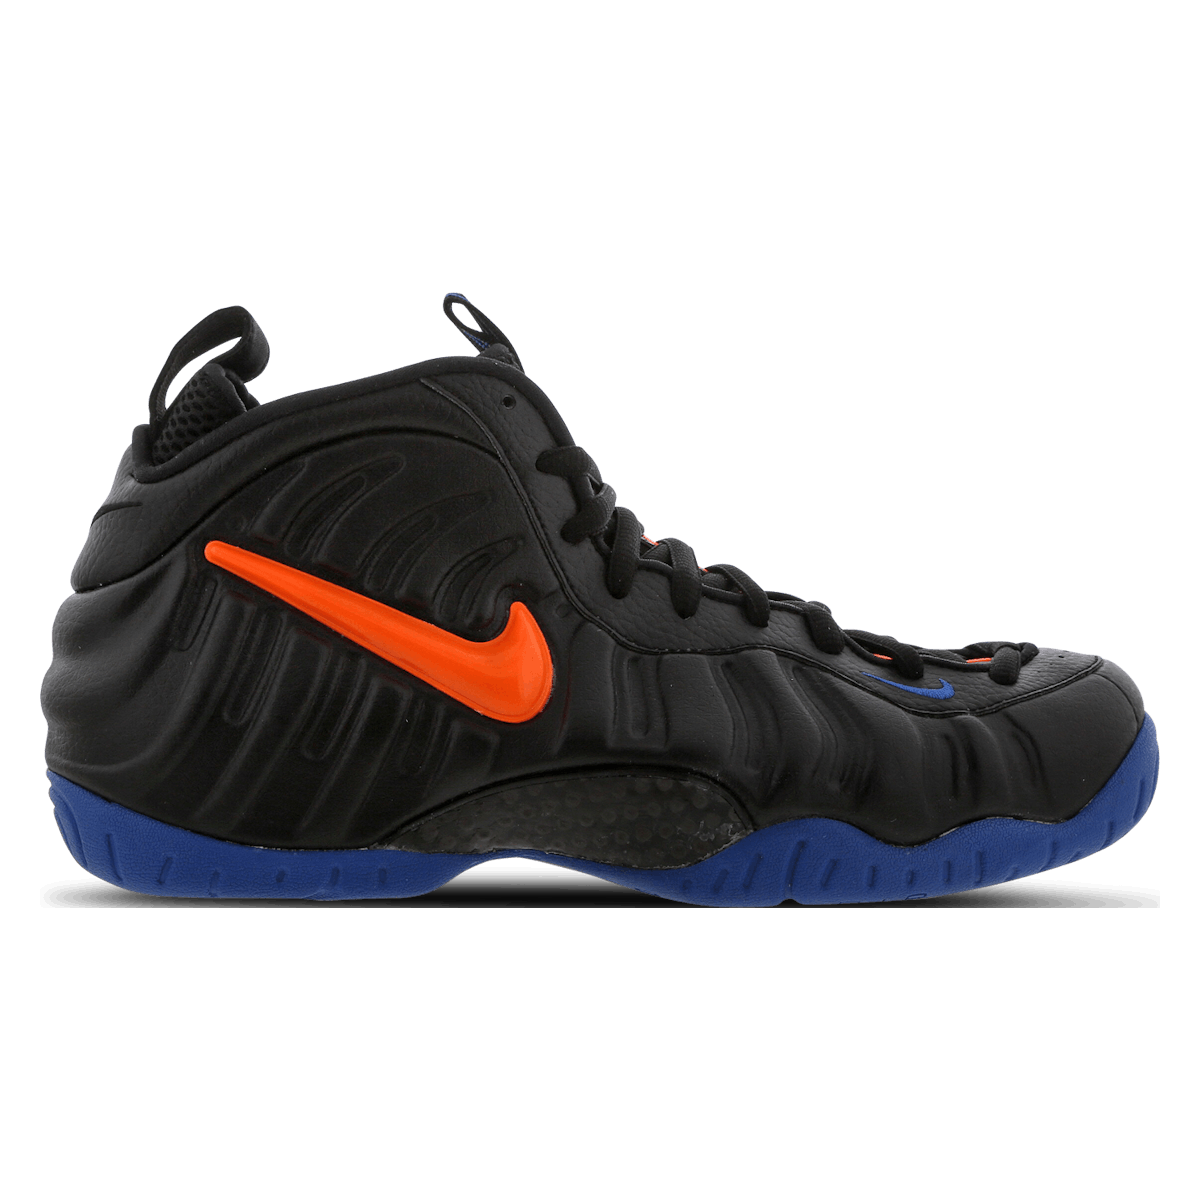 Nike Air Foamposite Pro Knicks